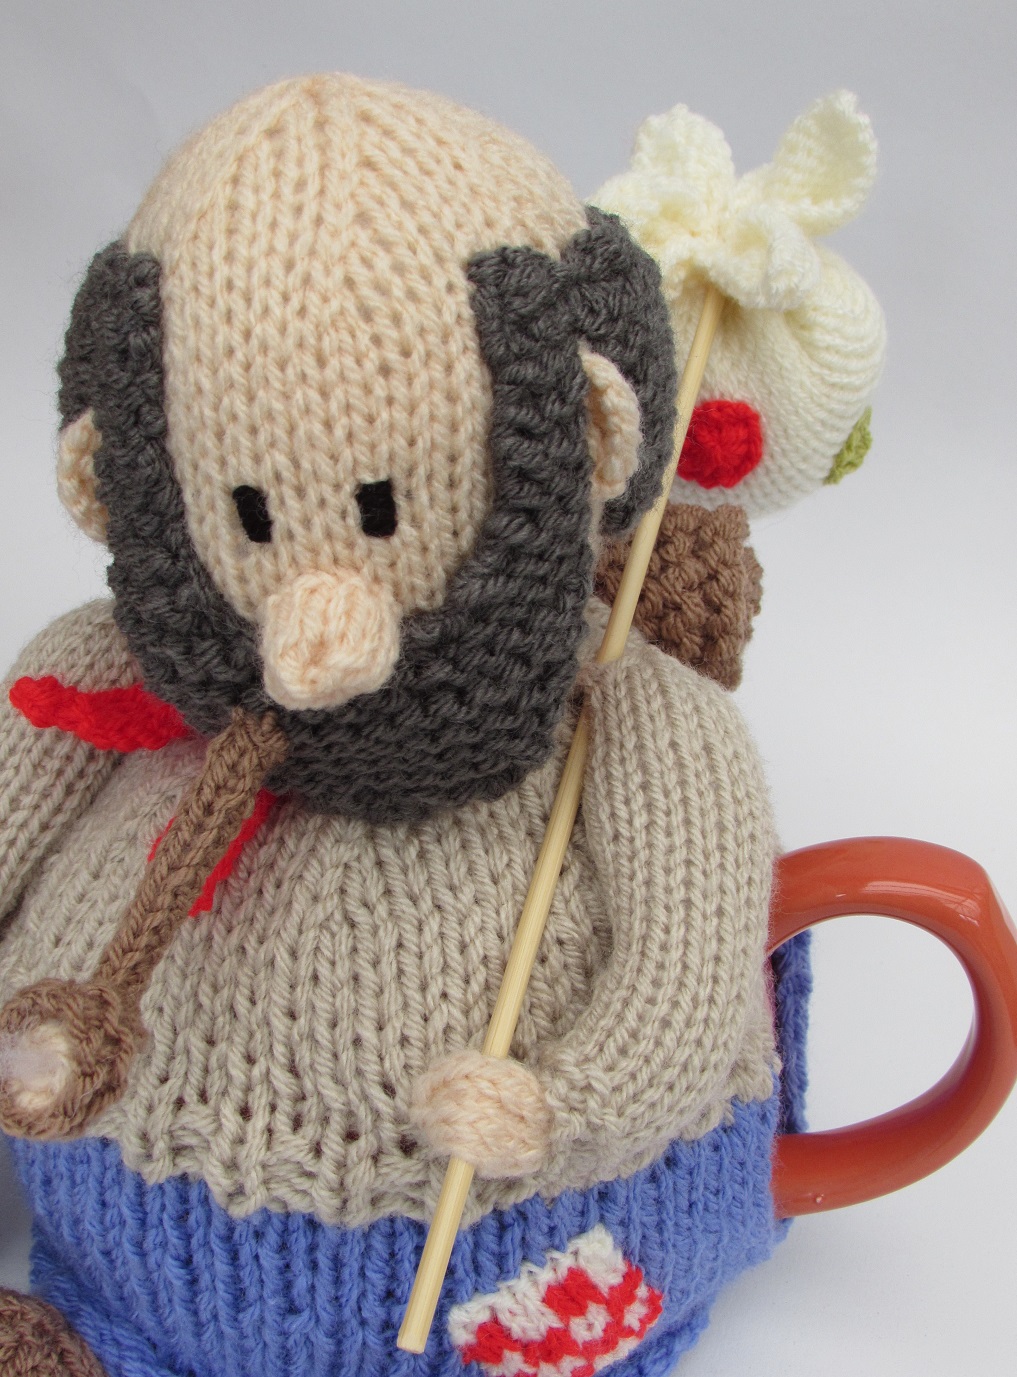 Australian Swaggie tea cosy knitting pattern